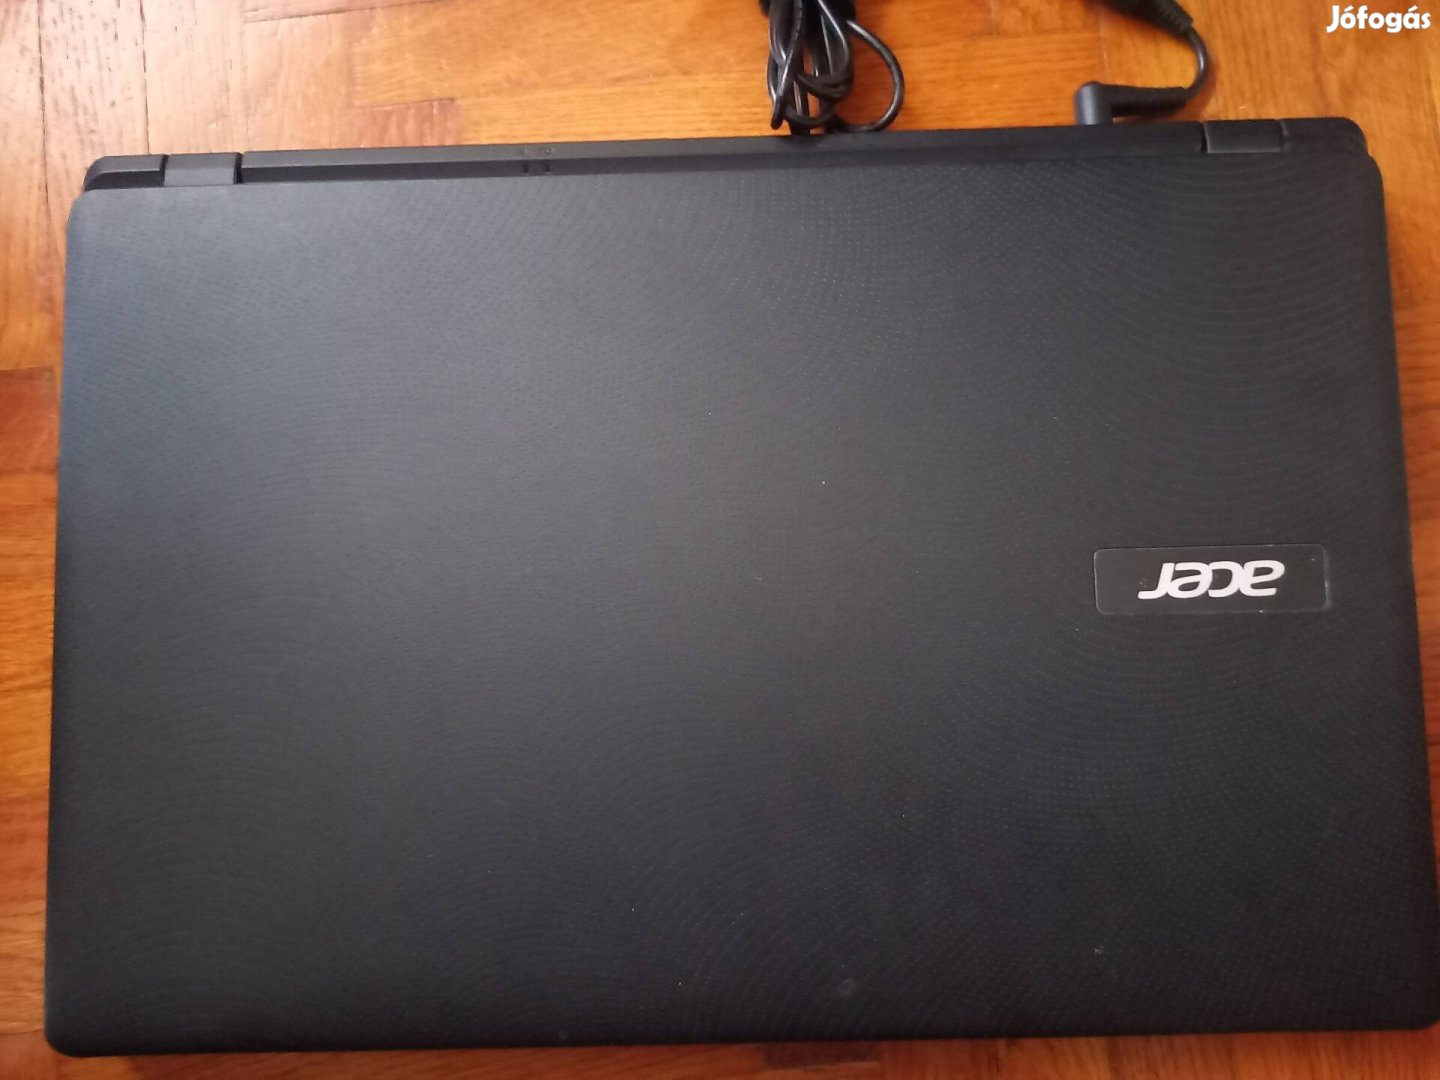 Acer Es1-531 laptop 4GB RAM, 500 GB HDD